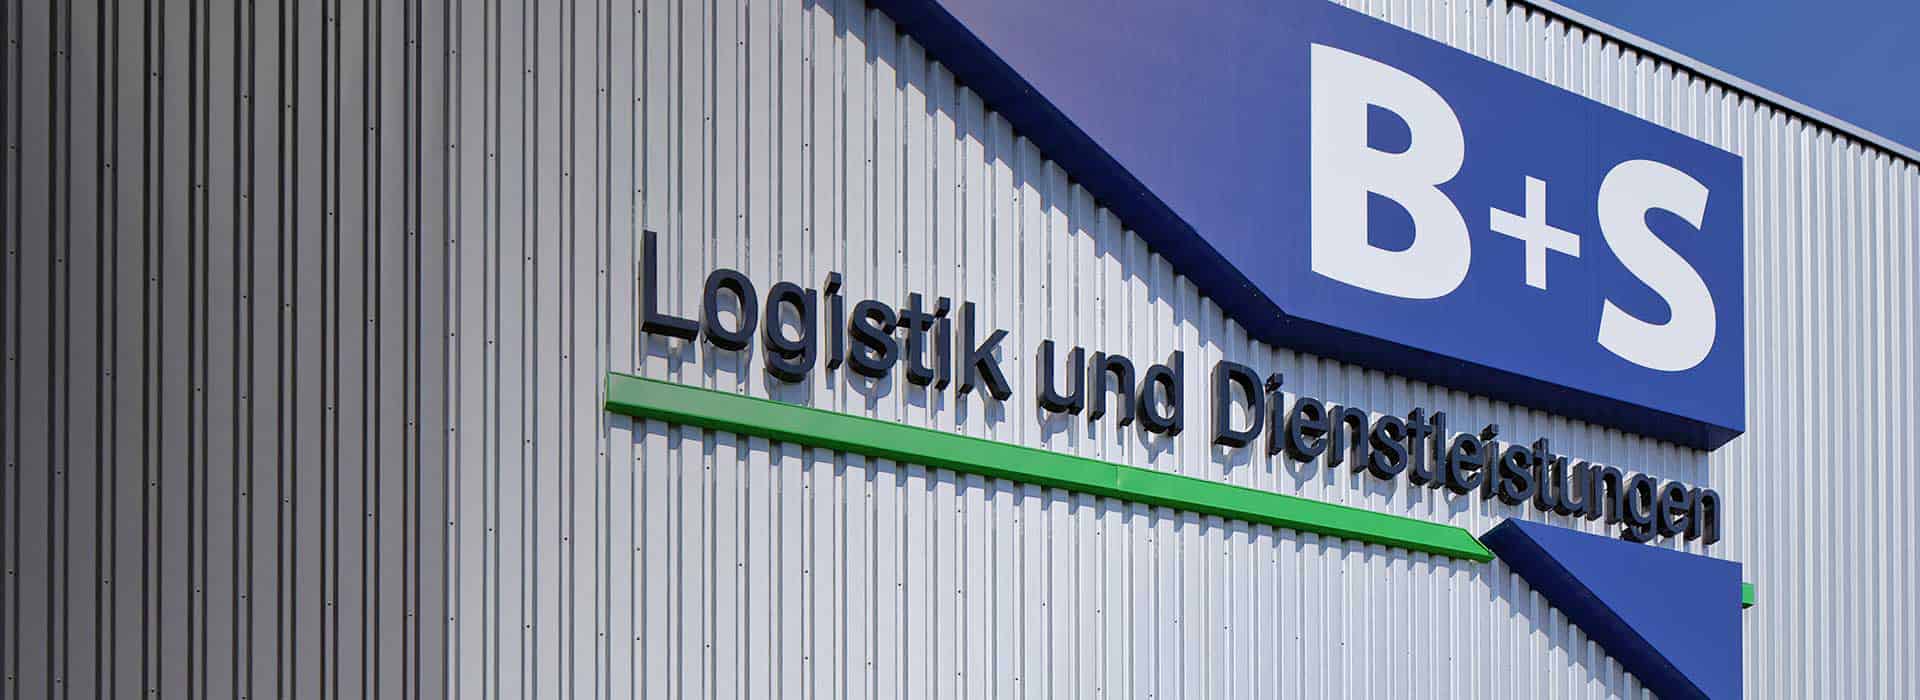 B+S ist mit elf Standorten in ganz Deutschland vertreten - Hauptsitz des Logistikdienstleisters: Borgholzhausen.